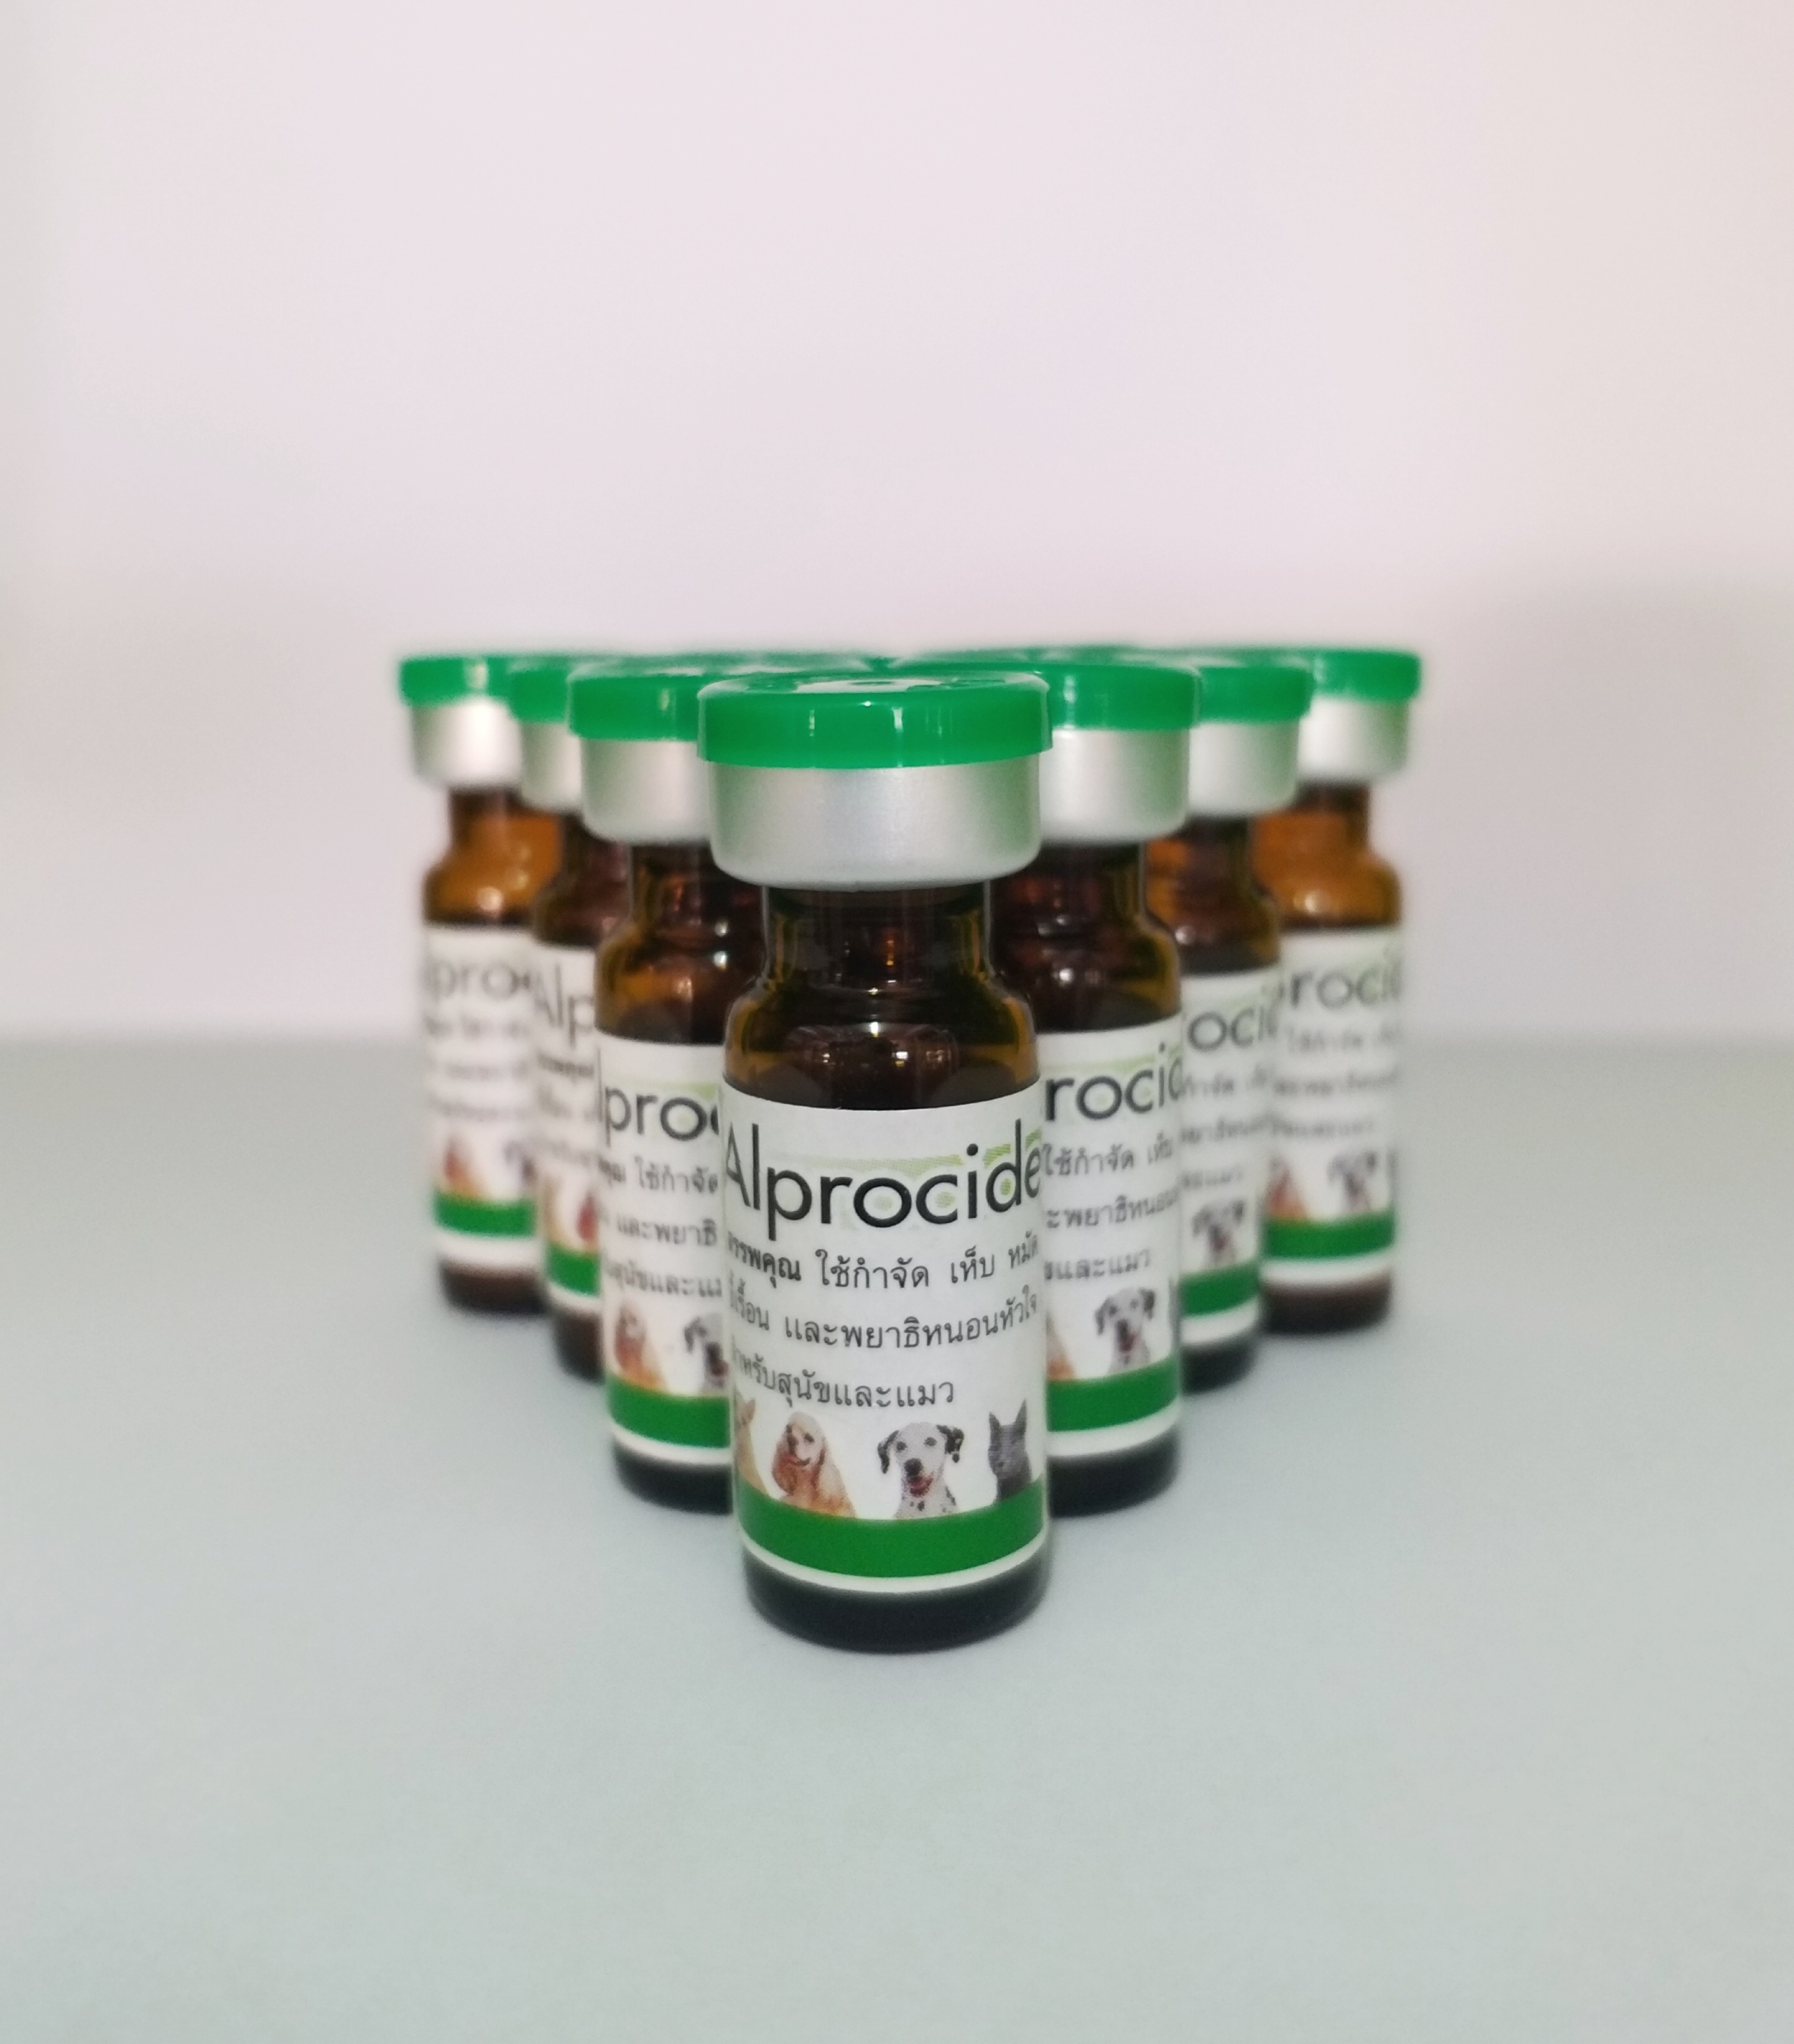 ยาหยดกำจัดเห็บหมัด Alprocide 2ซีซี 😾😿 สำหรับสุนัขโต